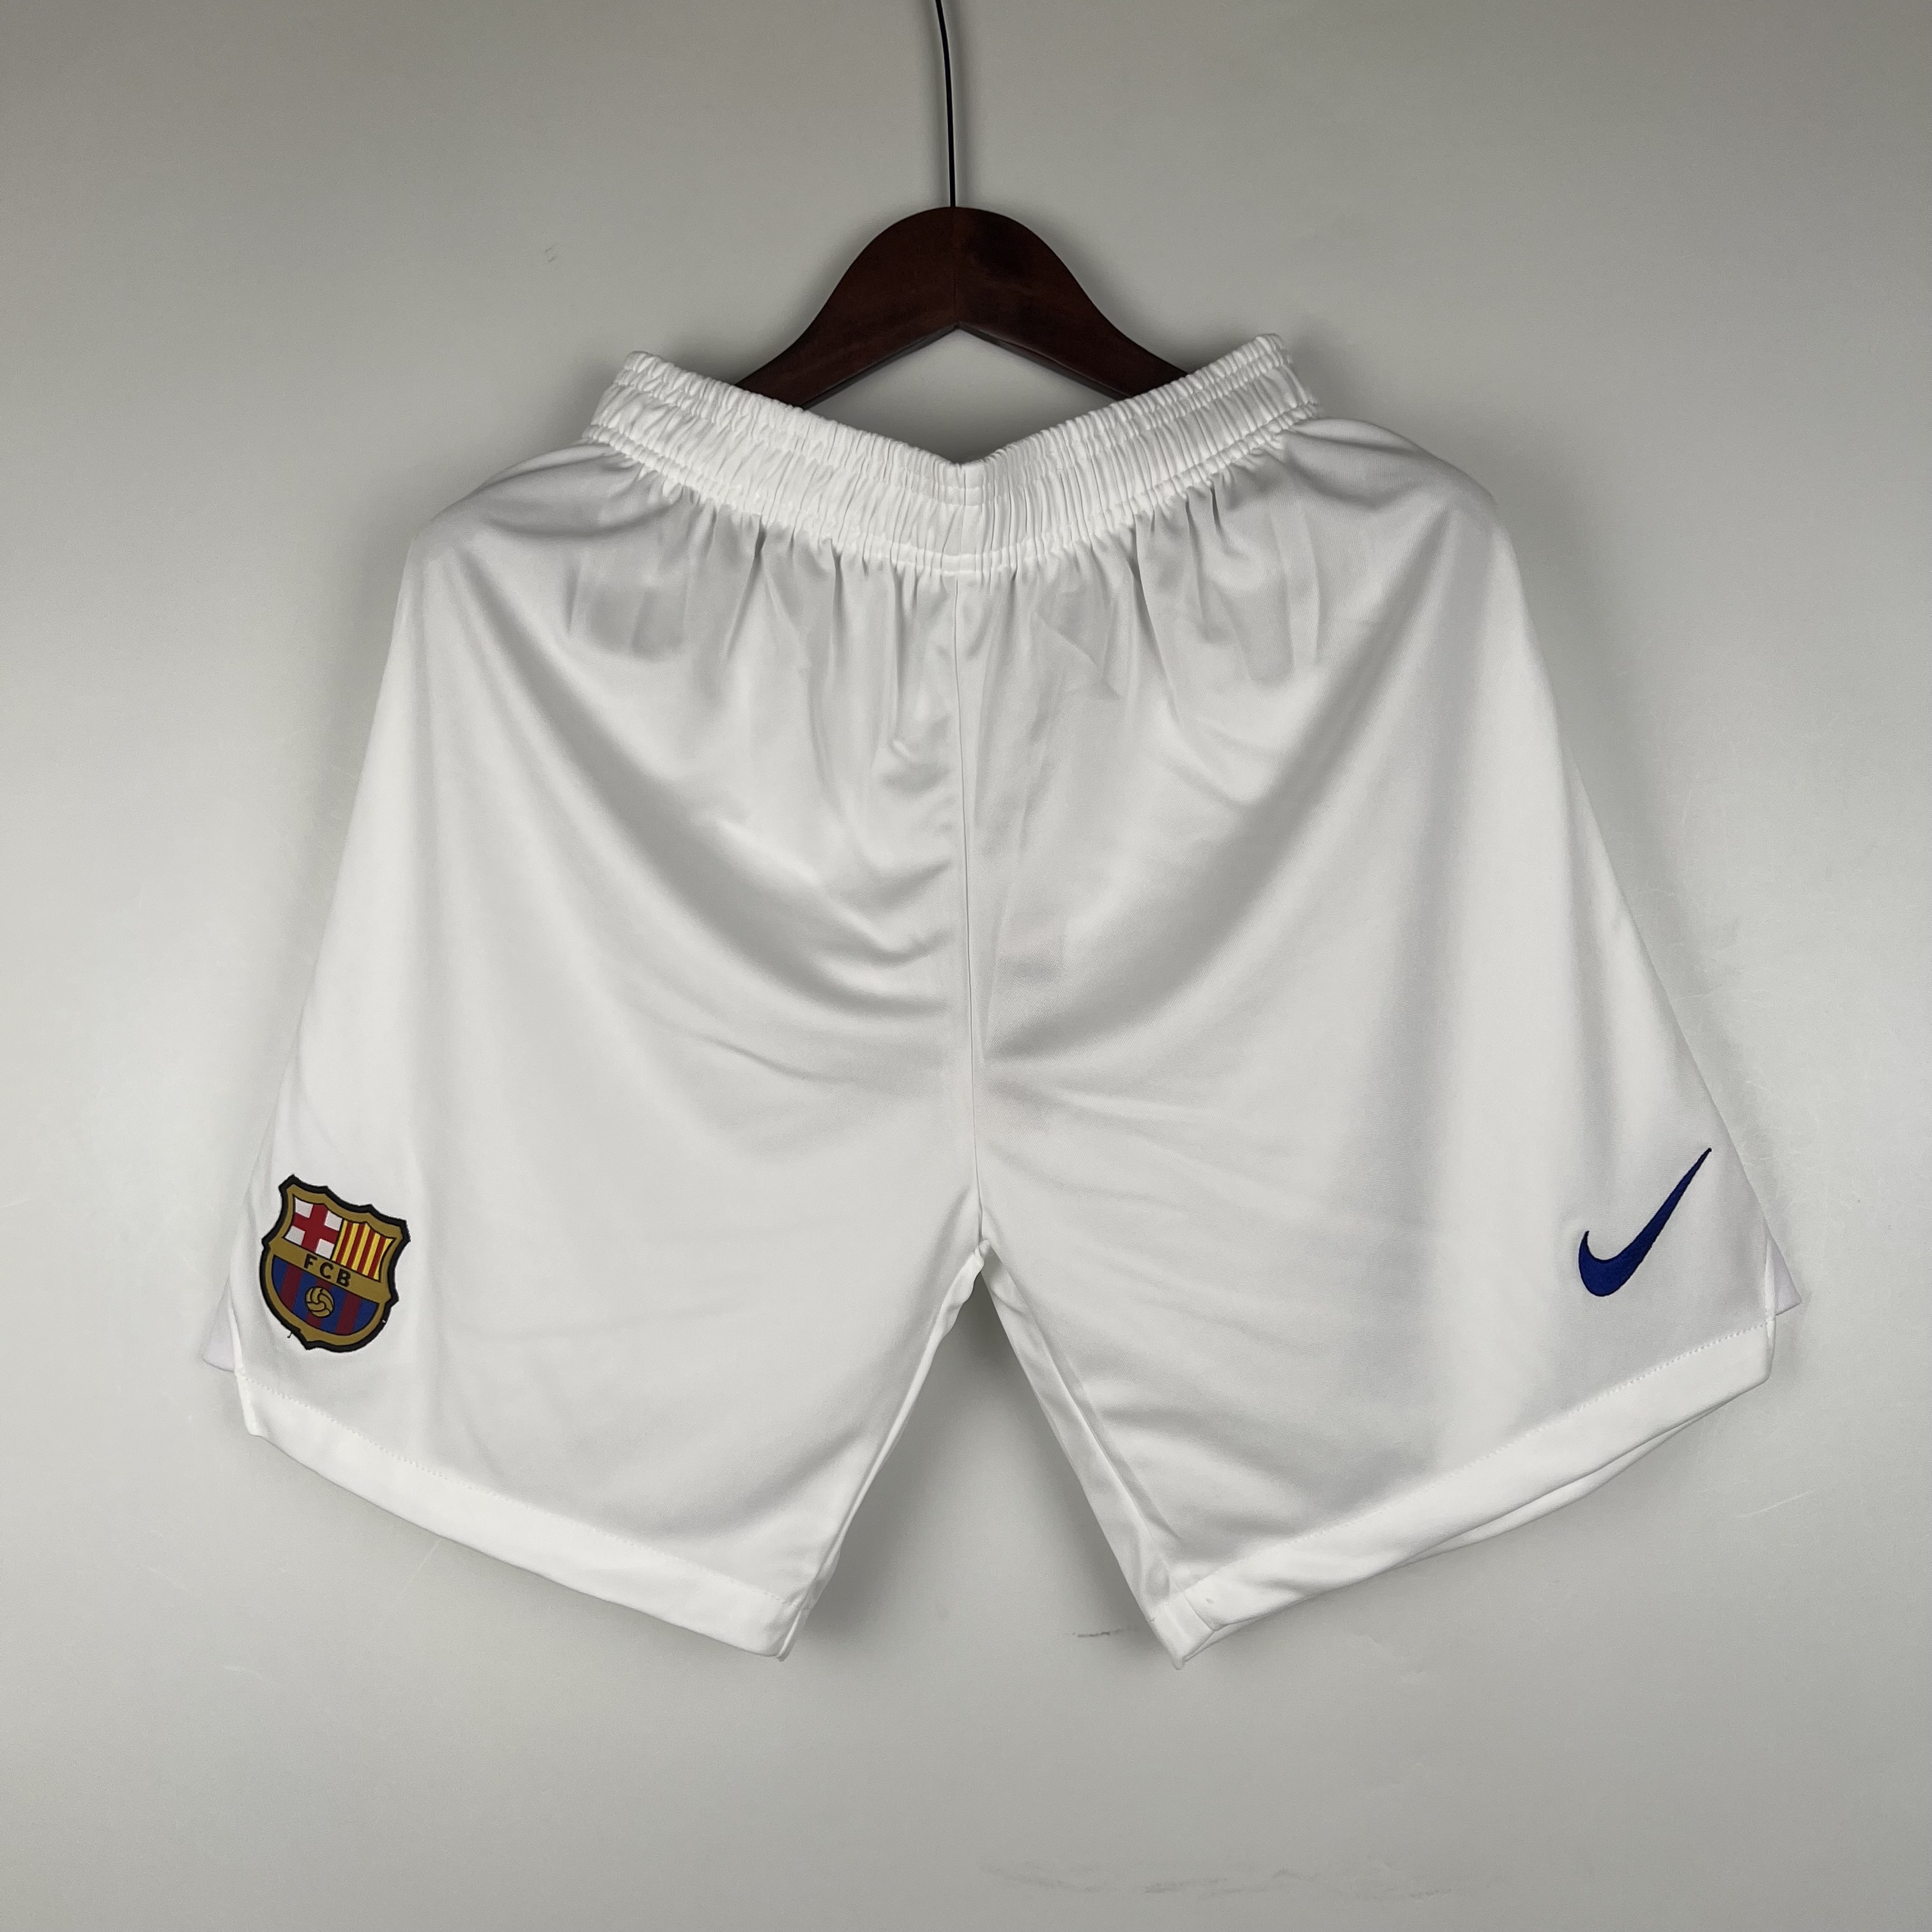 23/24 Barcelona white shorts